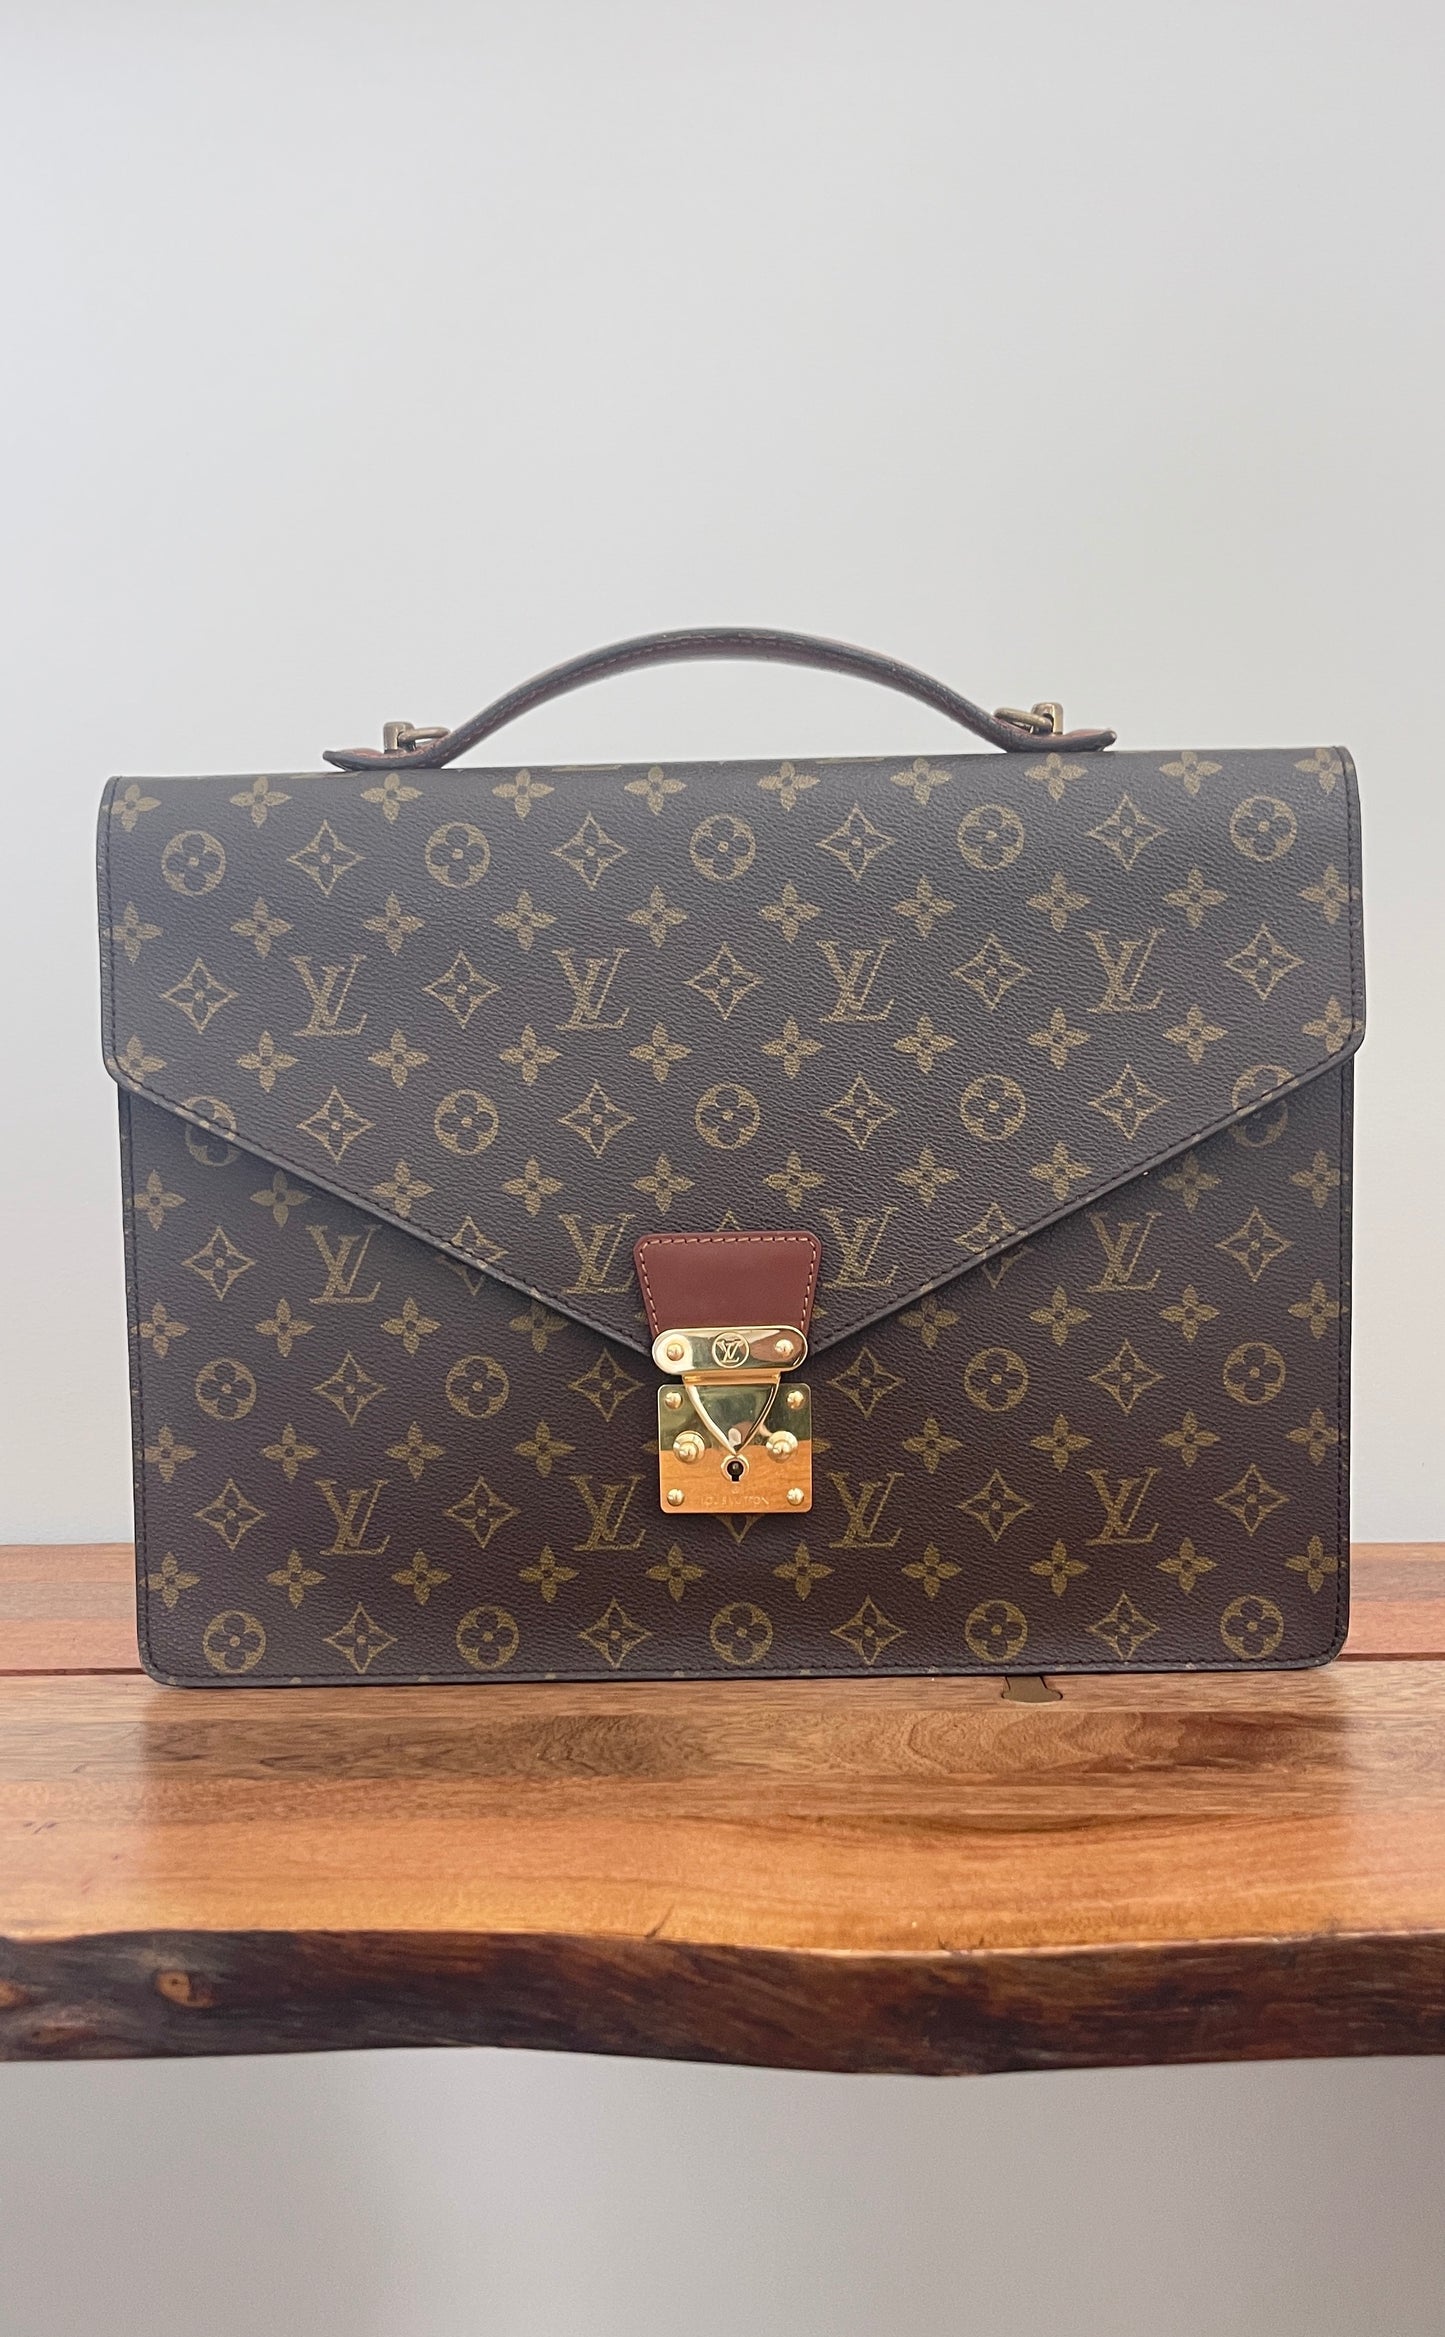 Vintage Combination Briefcase by Louis Vuitton at 1stDibs  louis vuitton  briefcase vintage price, louis vuitton combination lock, louis vuitton  luggage combination lock